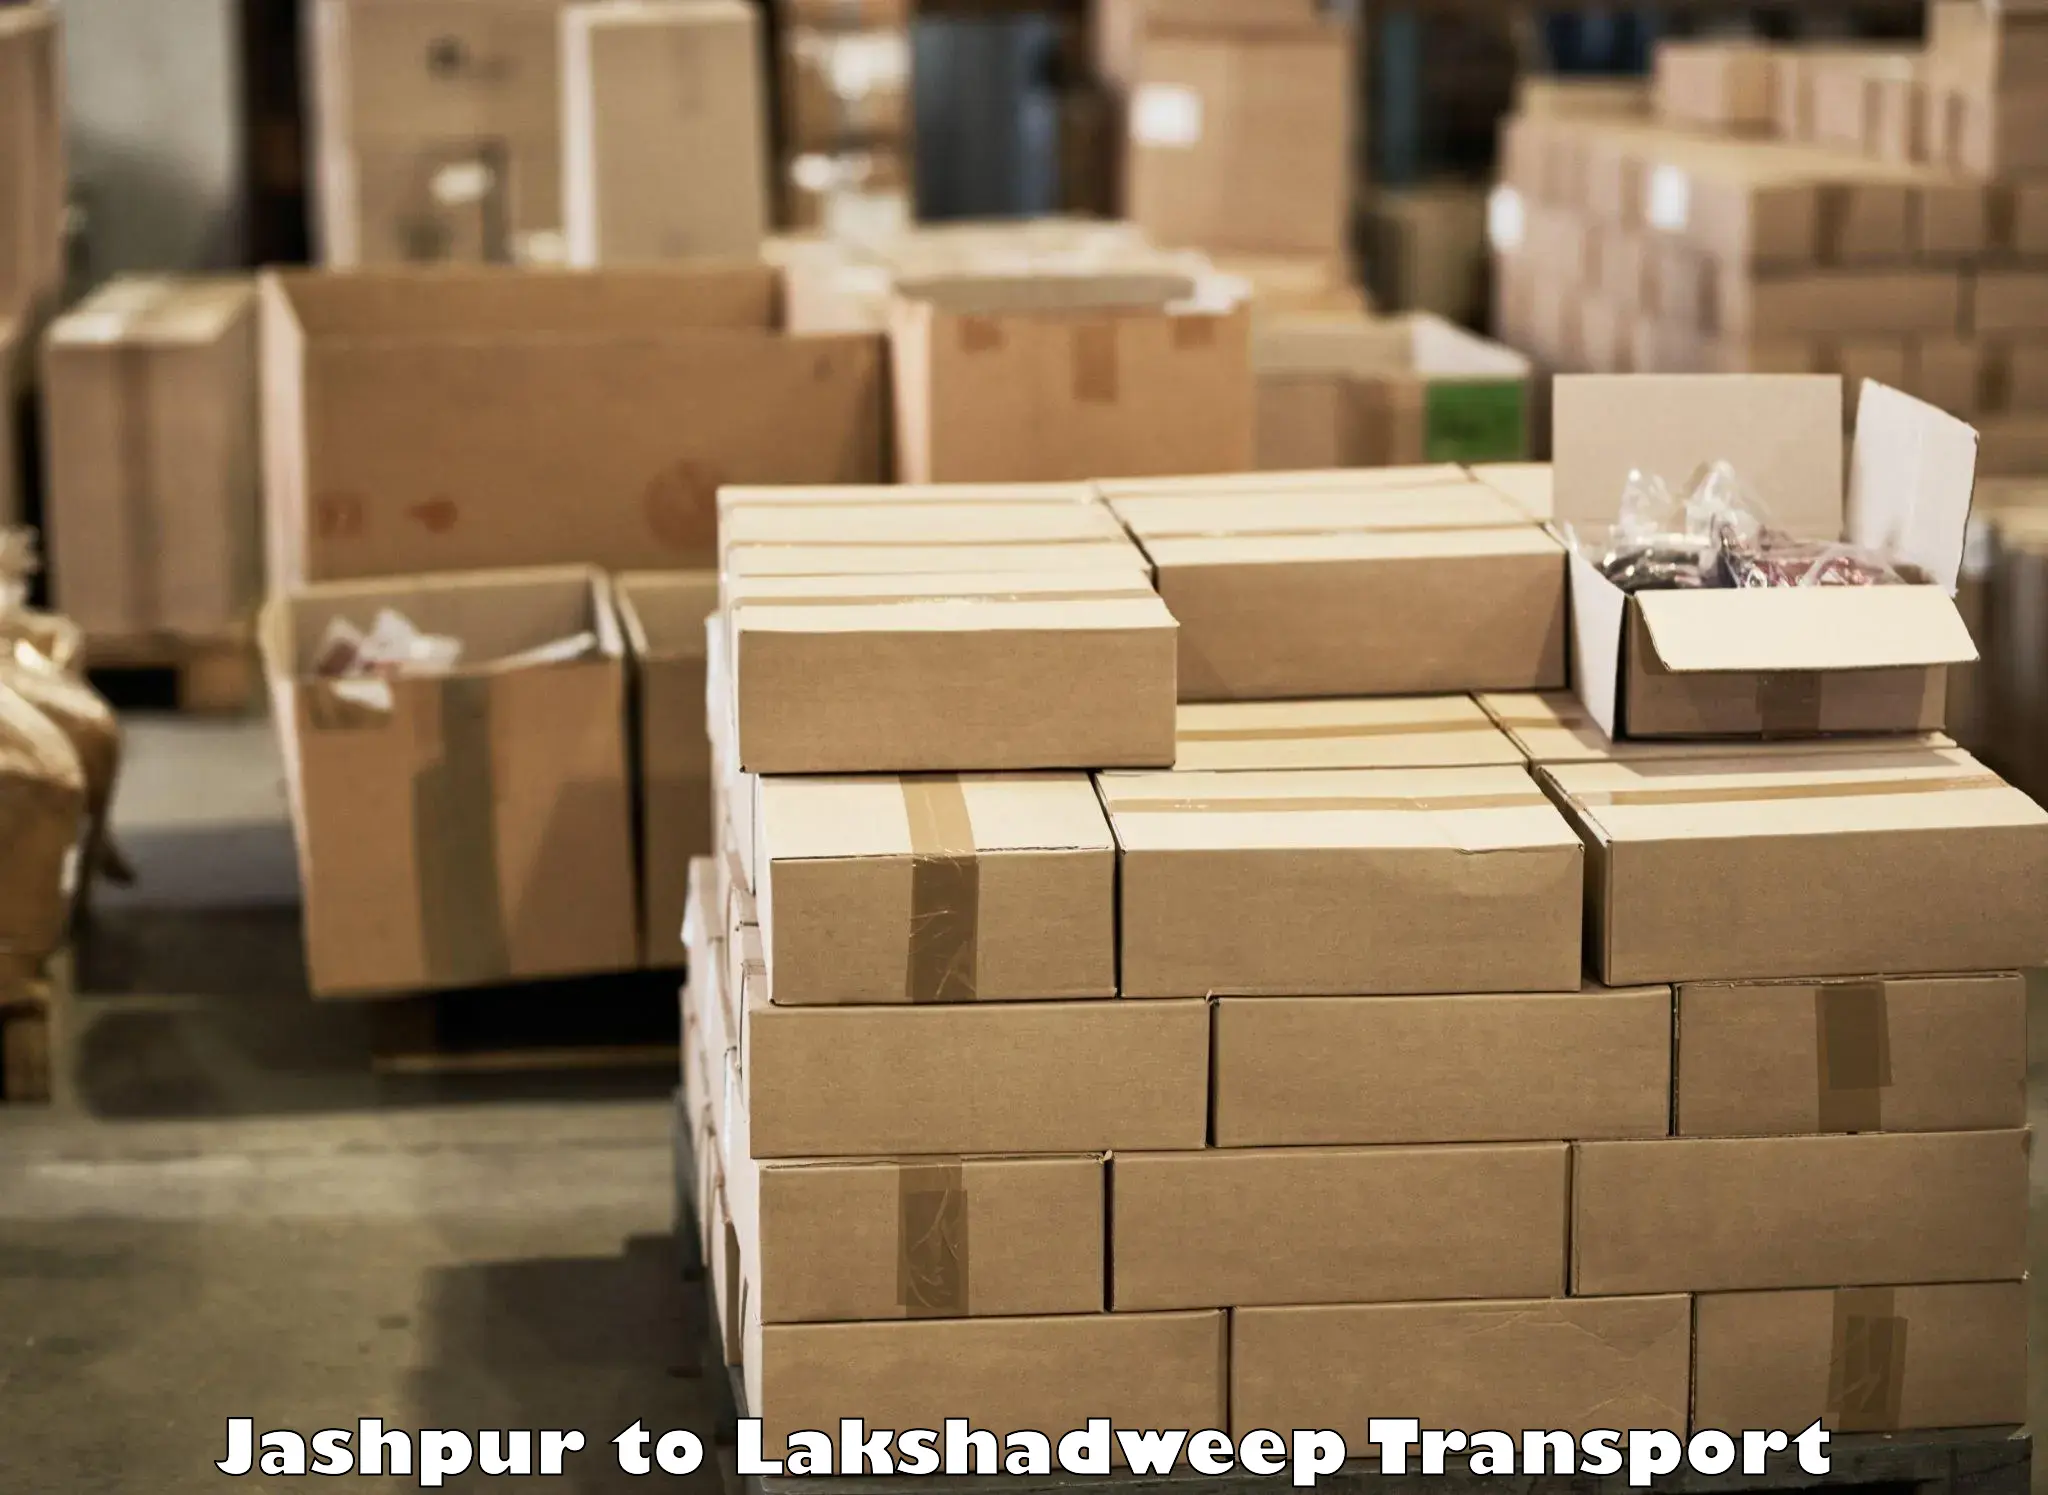 Bike transport service Jashpur to Lakshadweep